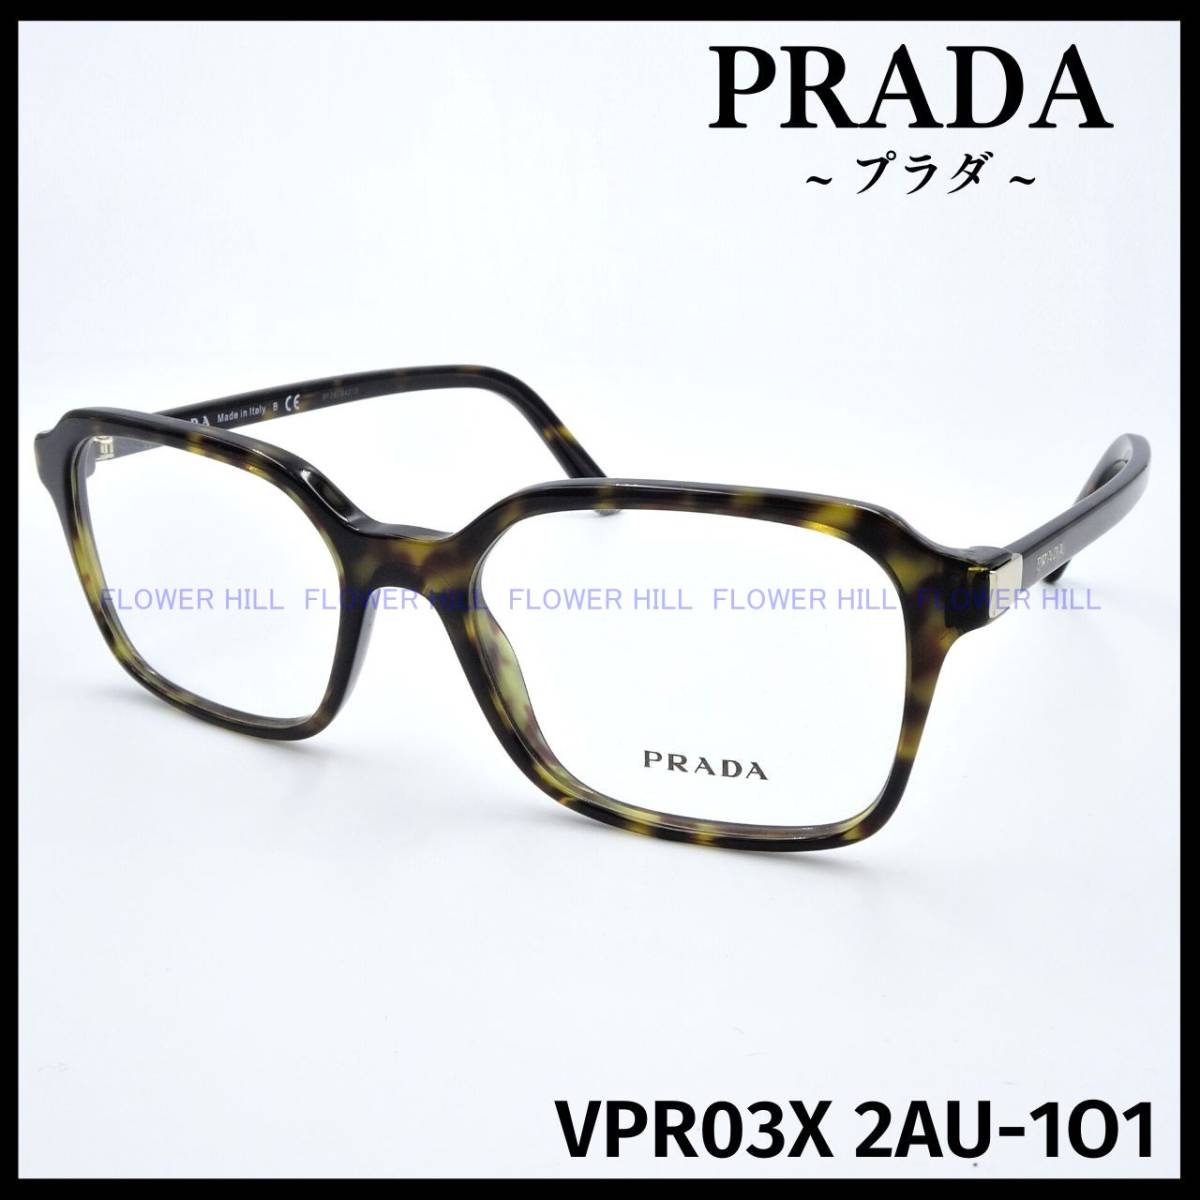 【新品・送料無料】プラダ PRADA VPR03X 2AU-1O1 メガネ フレーム ハバナ ウェリントン イタリア製 メンズ レディース